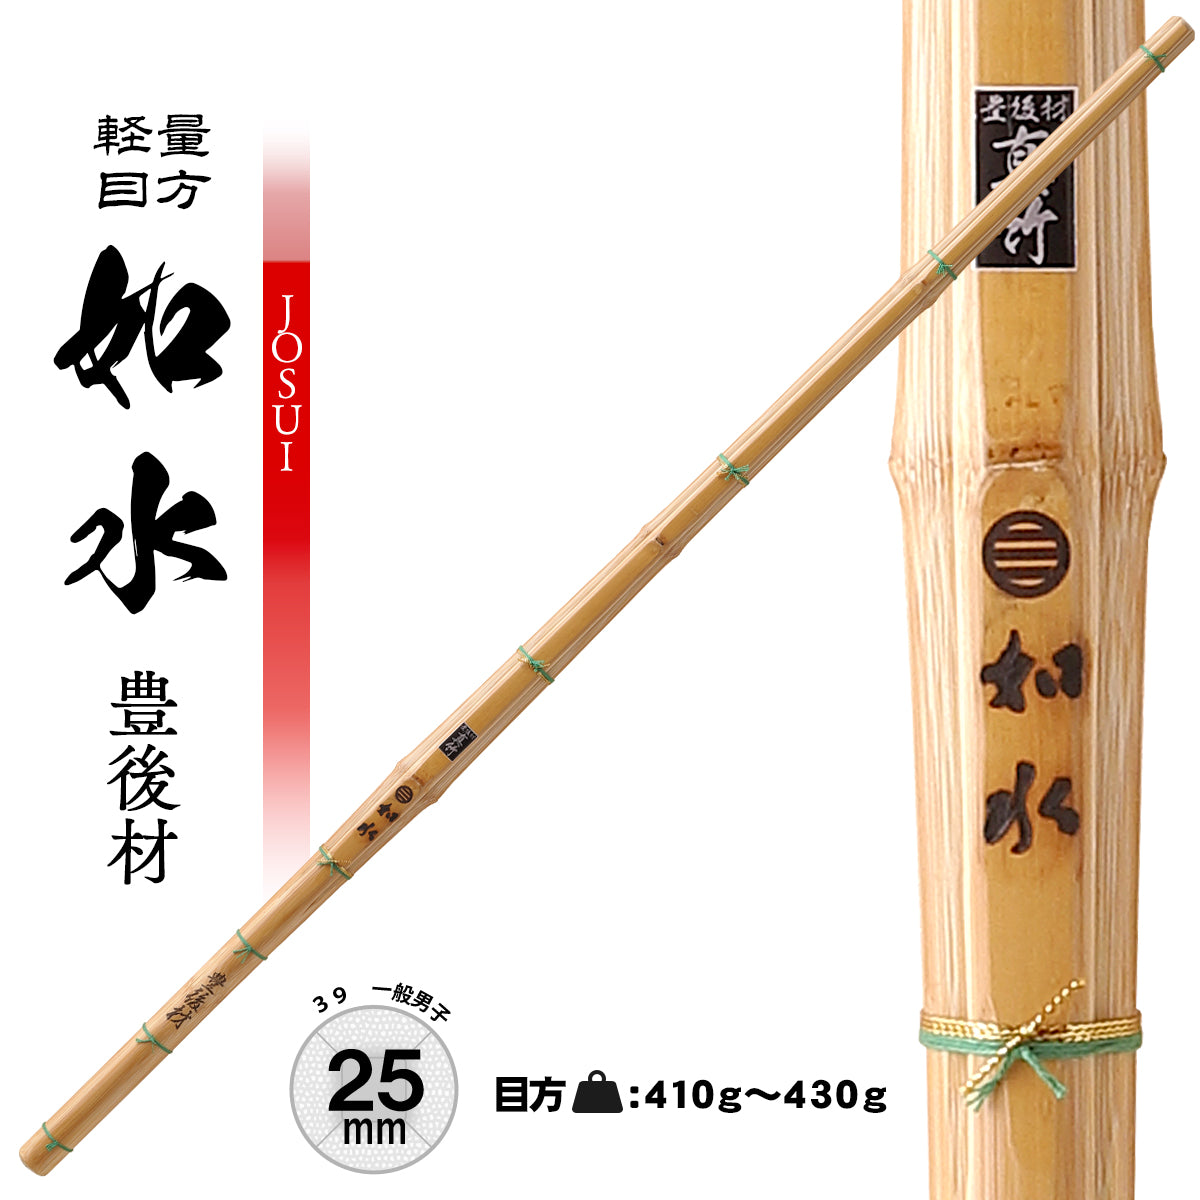 【 軽量 】日本製 竹刀 真竹工場謹製 如水 豊後材 39 / 25mm